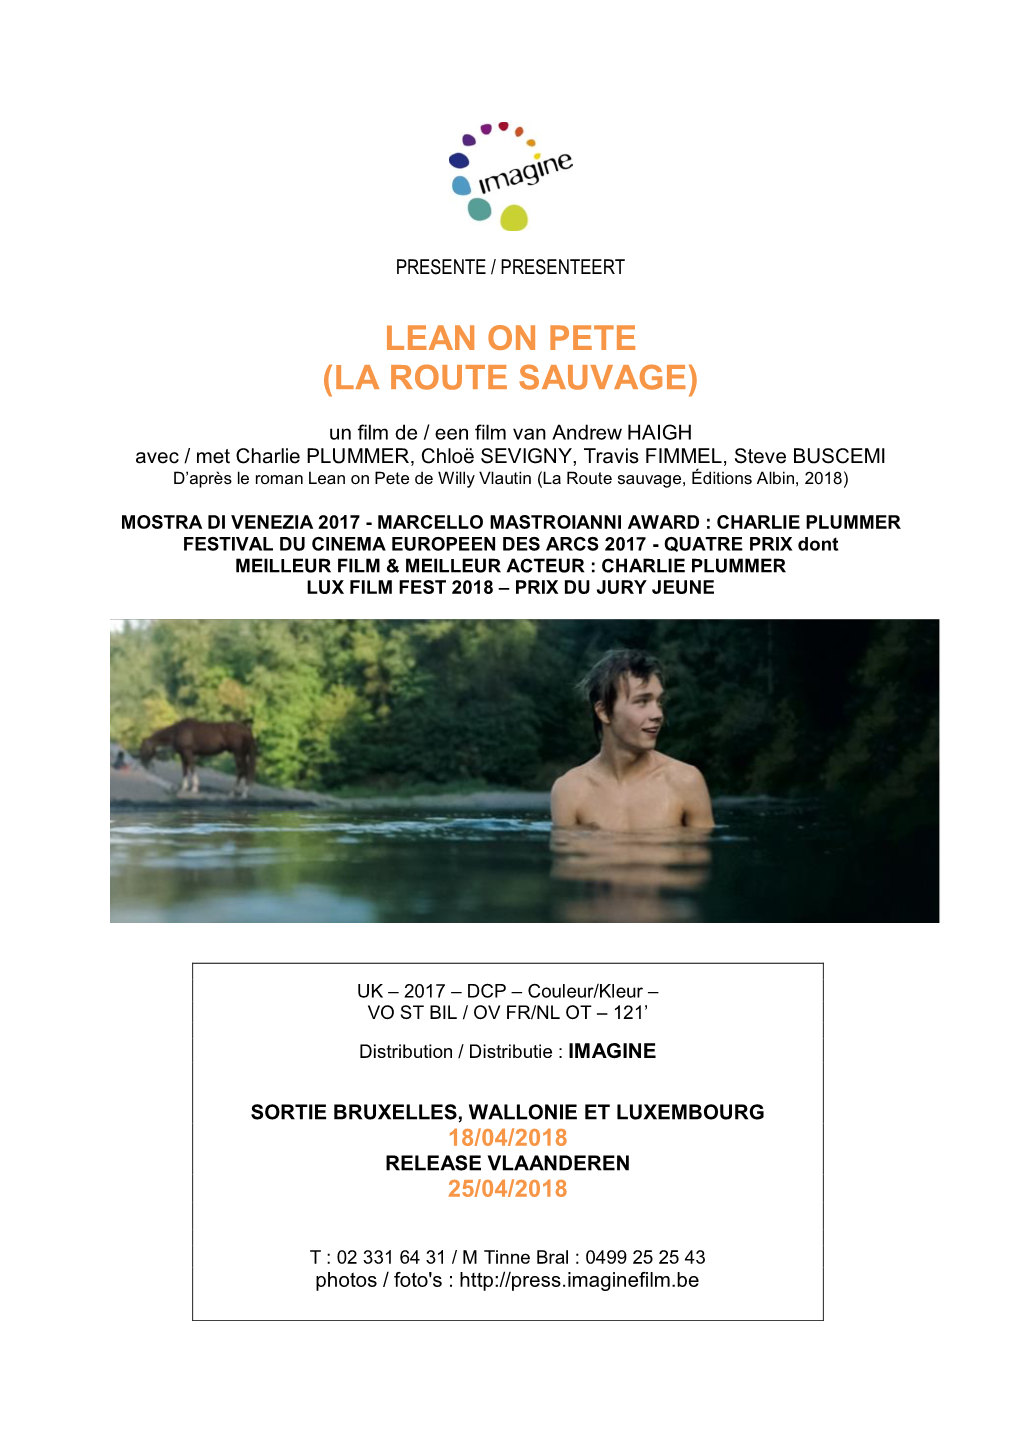 Lean on Pete (La Route Sauvage)